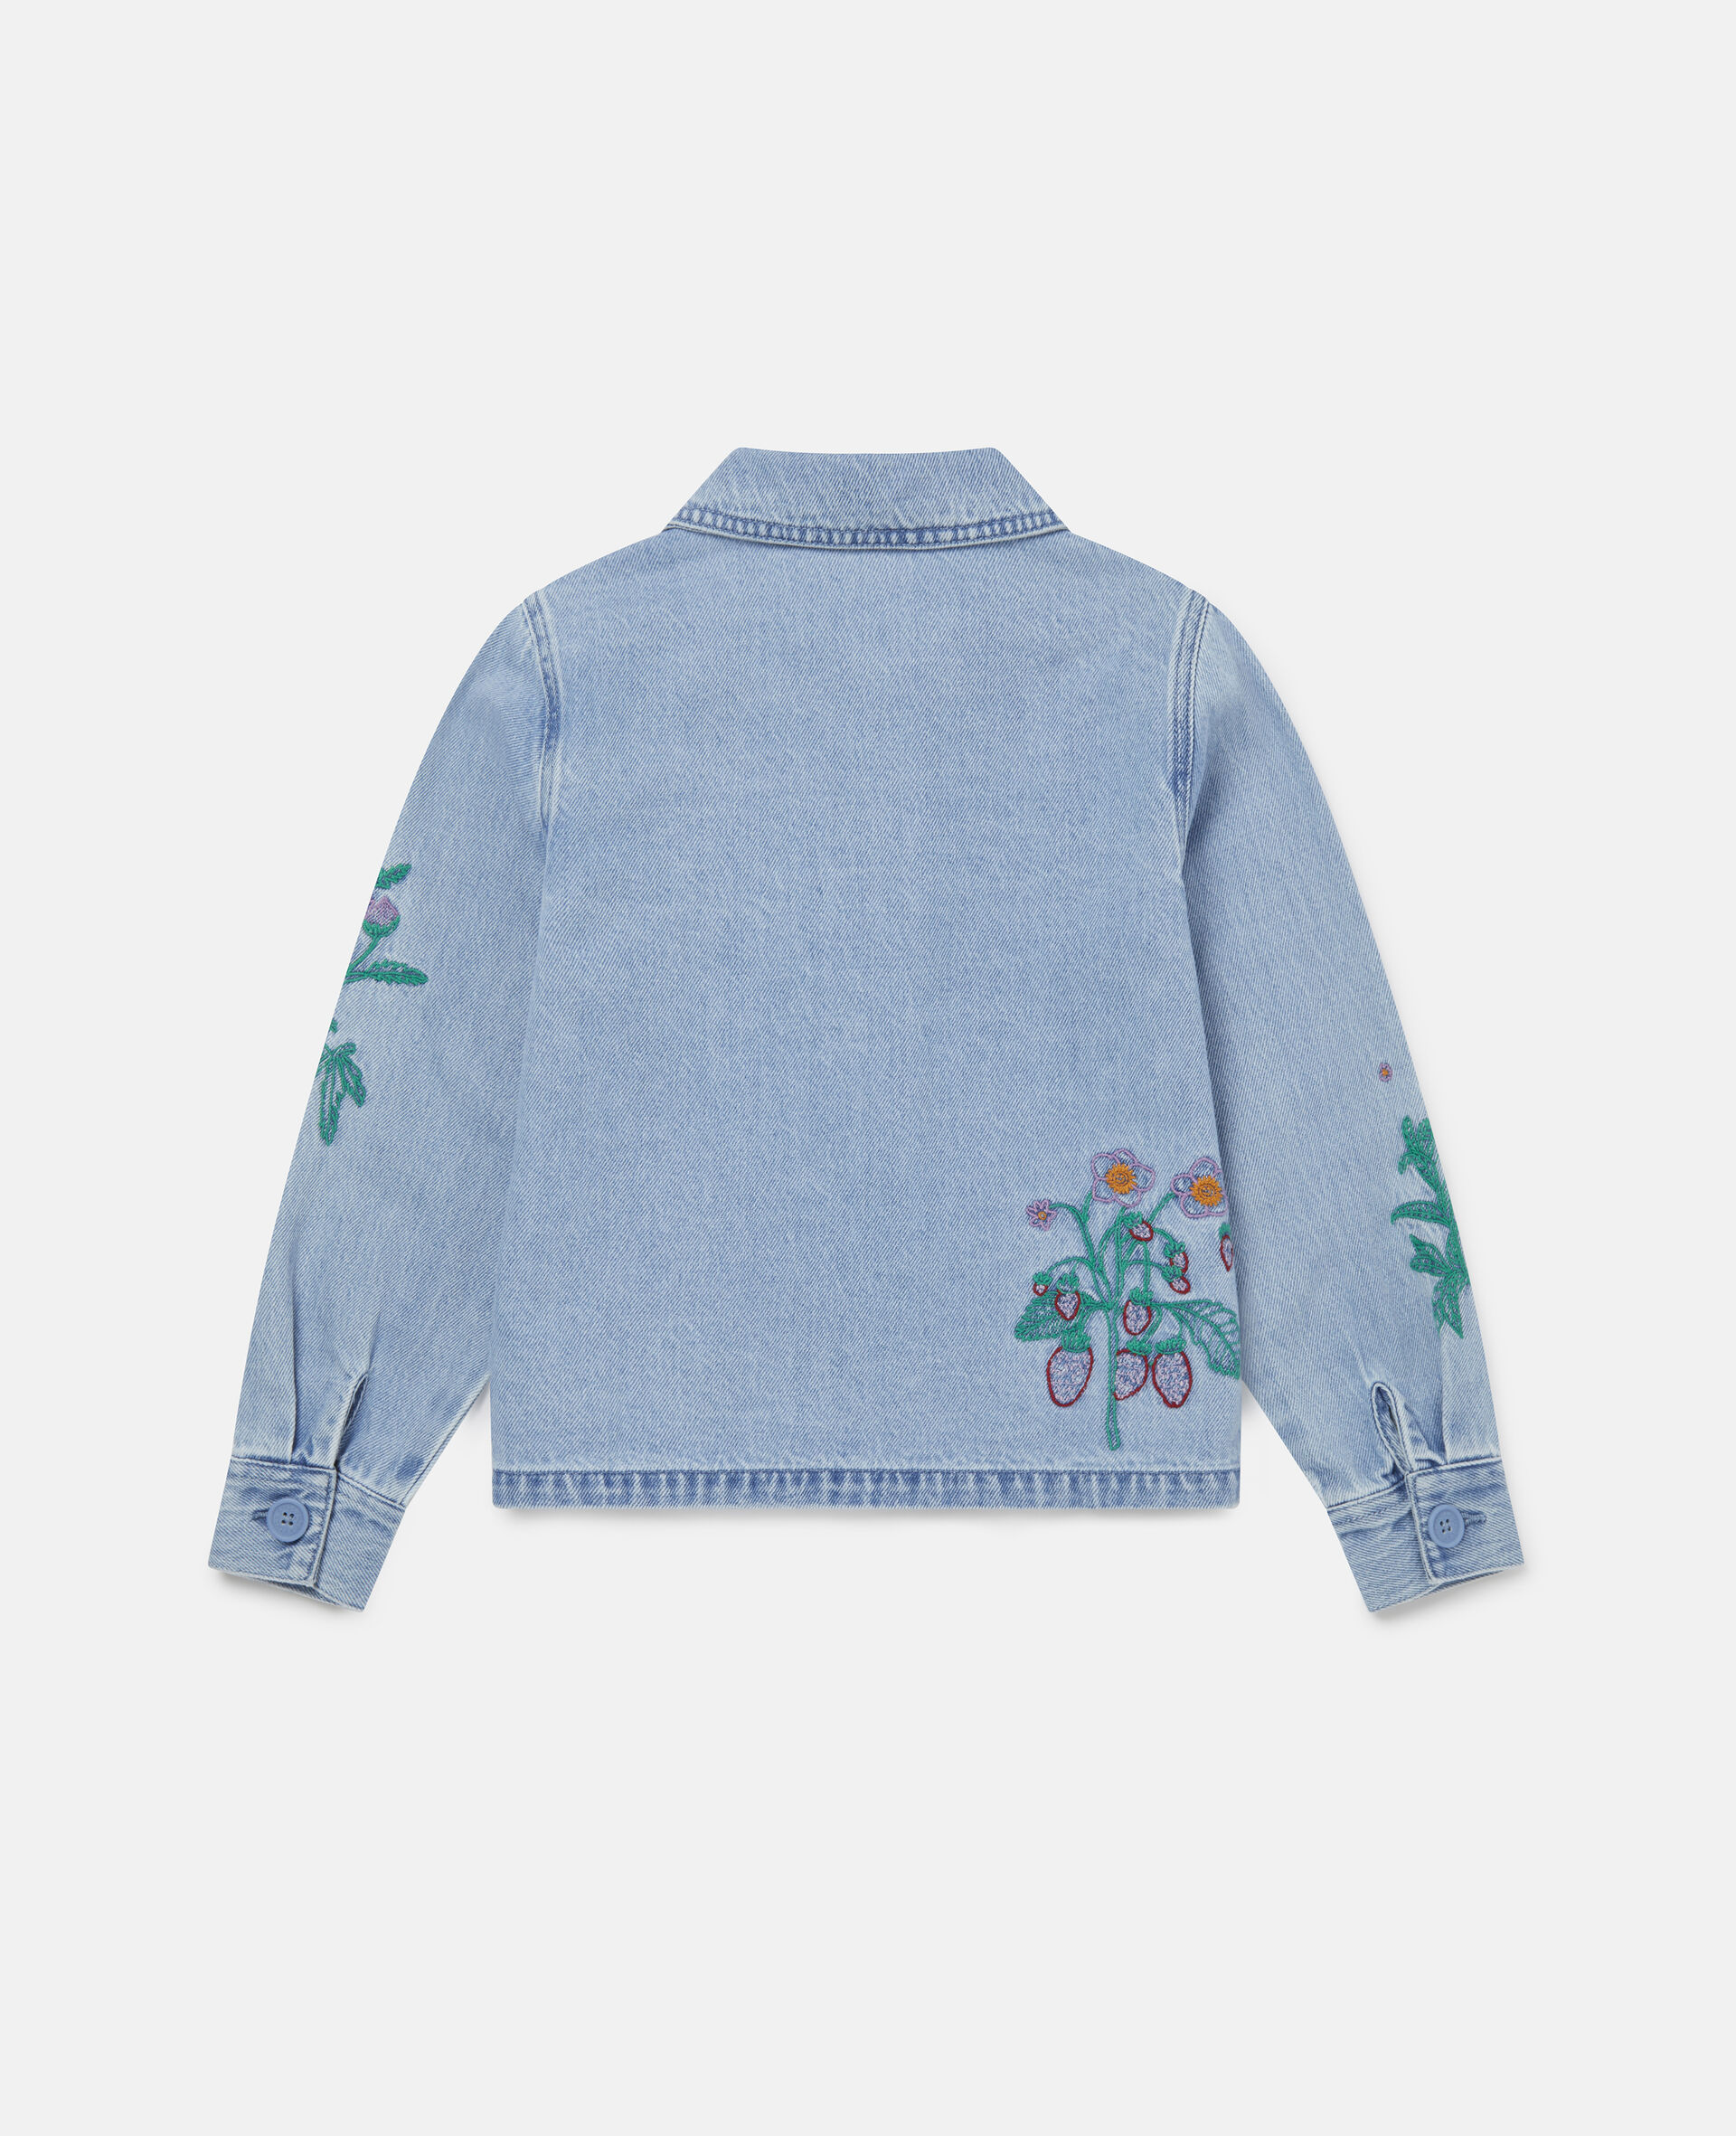 Flower Embroidered Denim Jacket -Blue-large image number 2